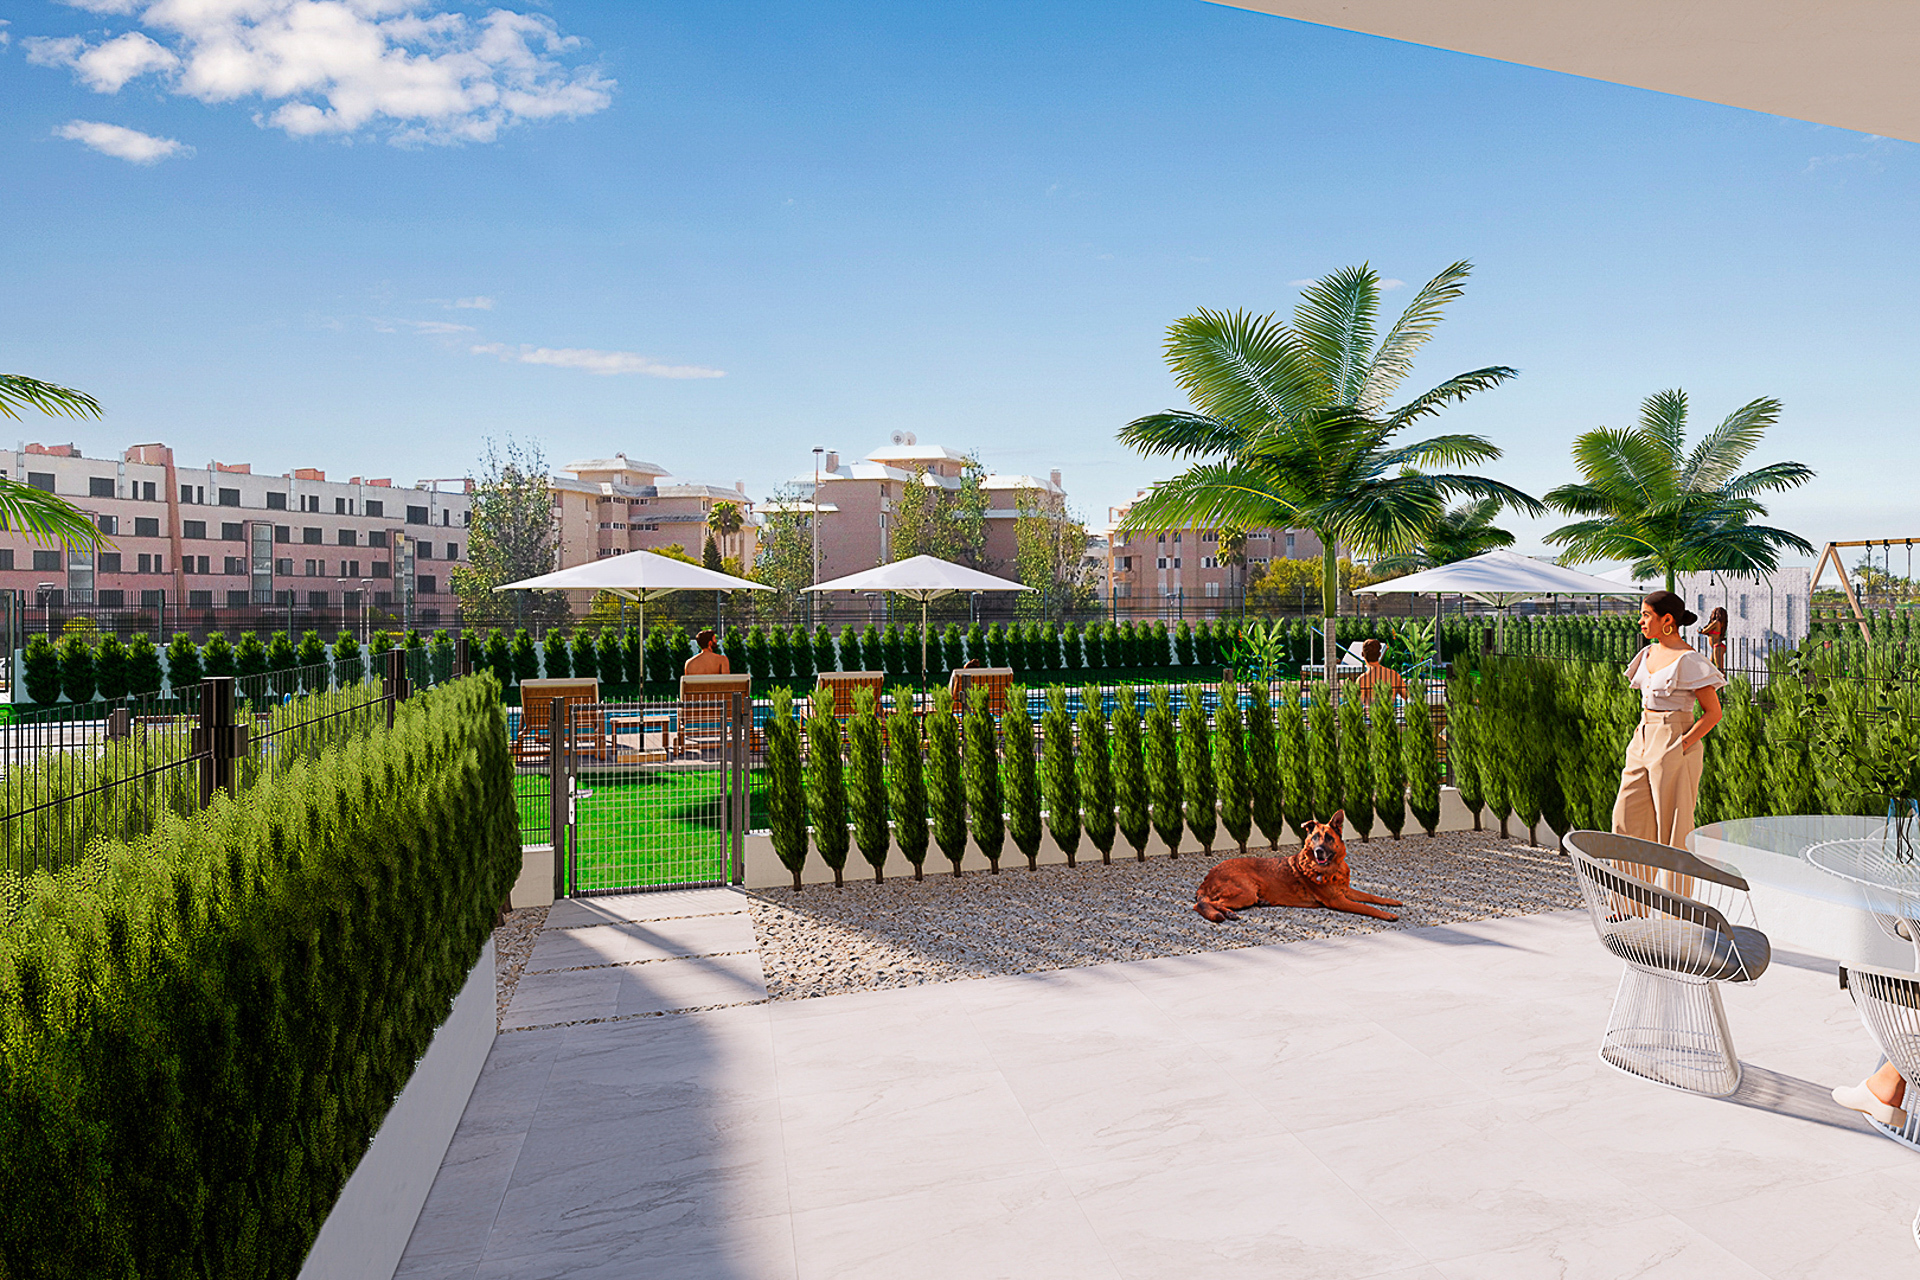 Exclusiva obra nueva: piso en planta baja con terraza jardín privada y piscina comunitaria, 07560 Sa Coma (España), Piso en planta baja